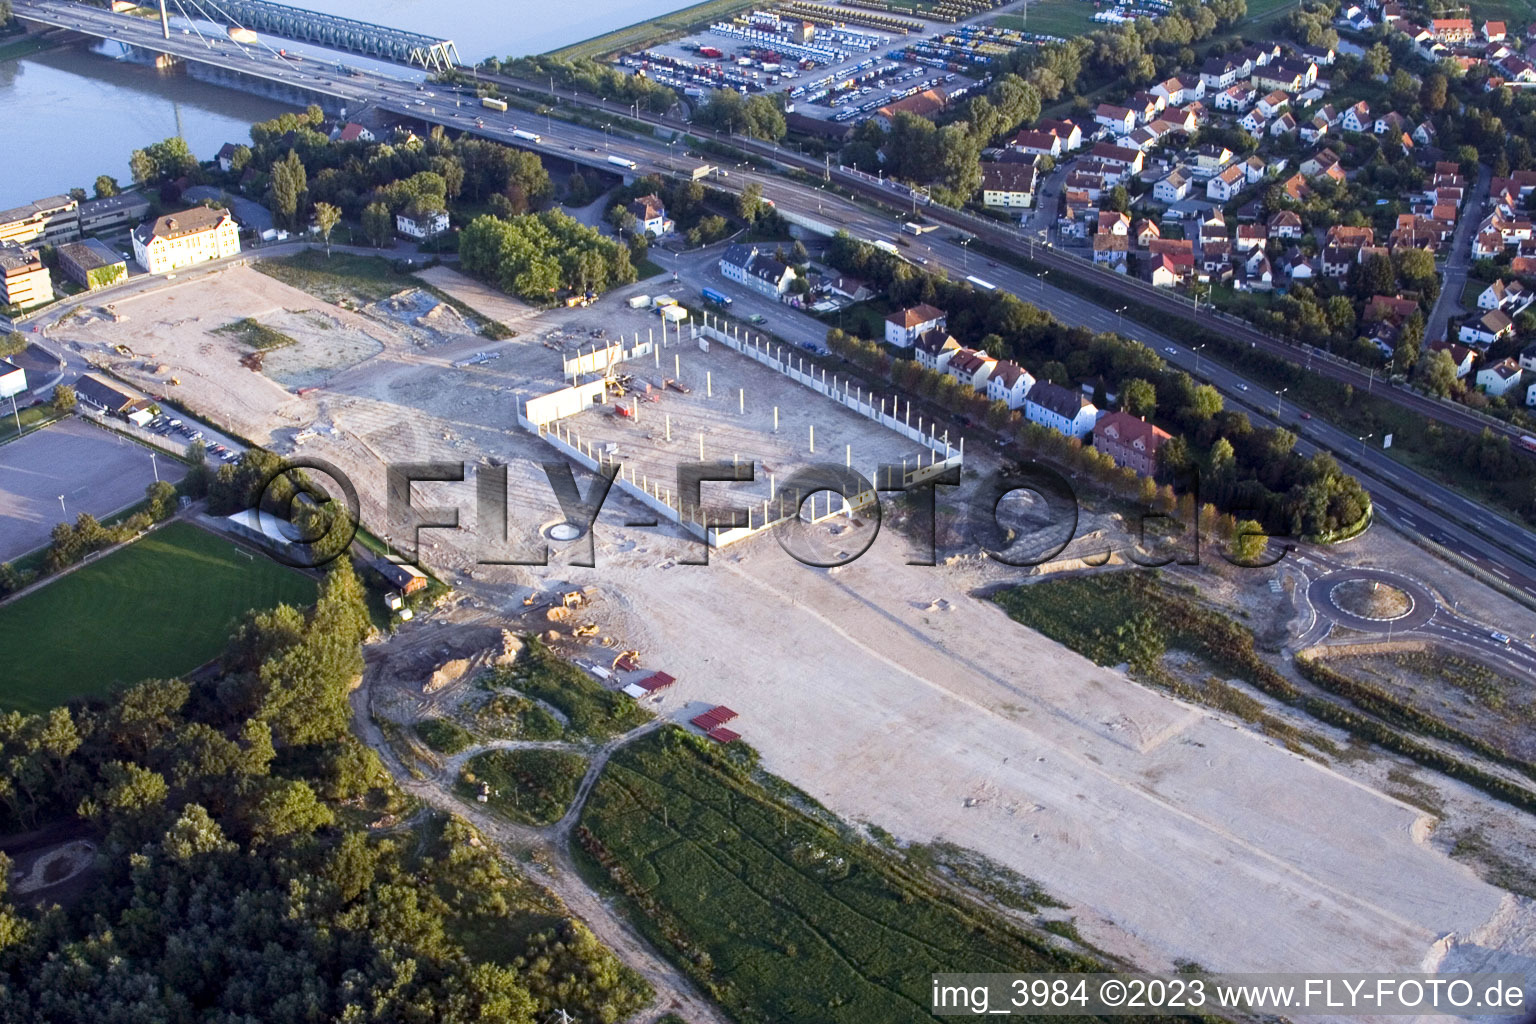 Luftbild von Fachmarktzentrum Maximiliancenter in Wörth-Maximiliansau, Baustelle Globus in Wörth am Rhein im Bundesland Rheinland-Pfalz, Deutschland